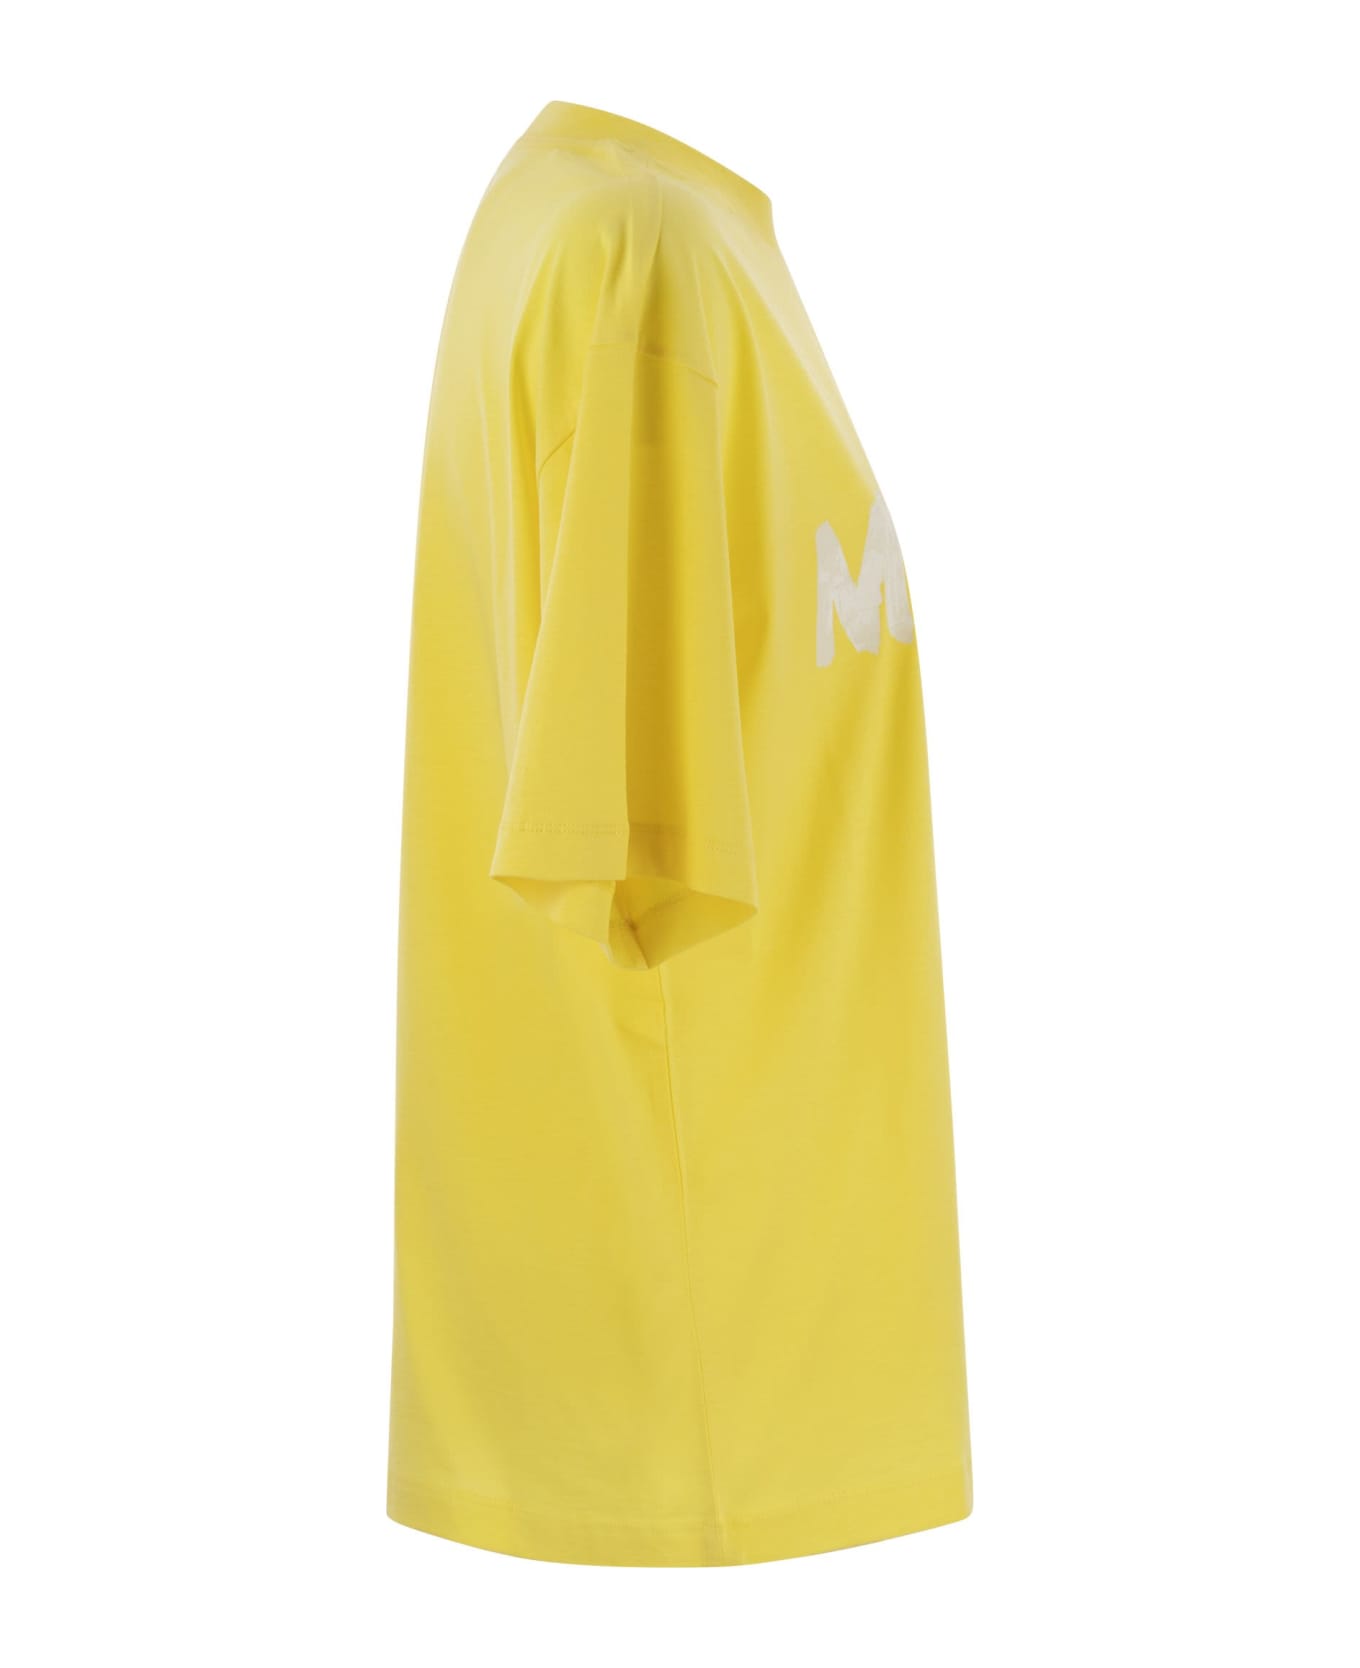 Marni Cotton Jersey T-shirt With Marni Print - Yellow